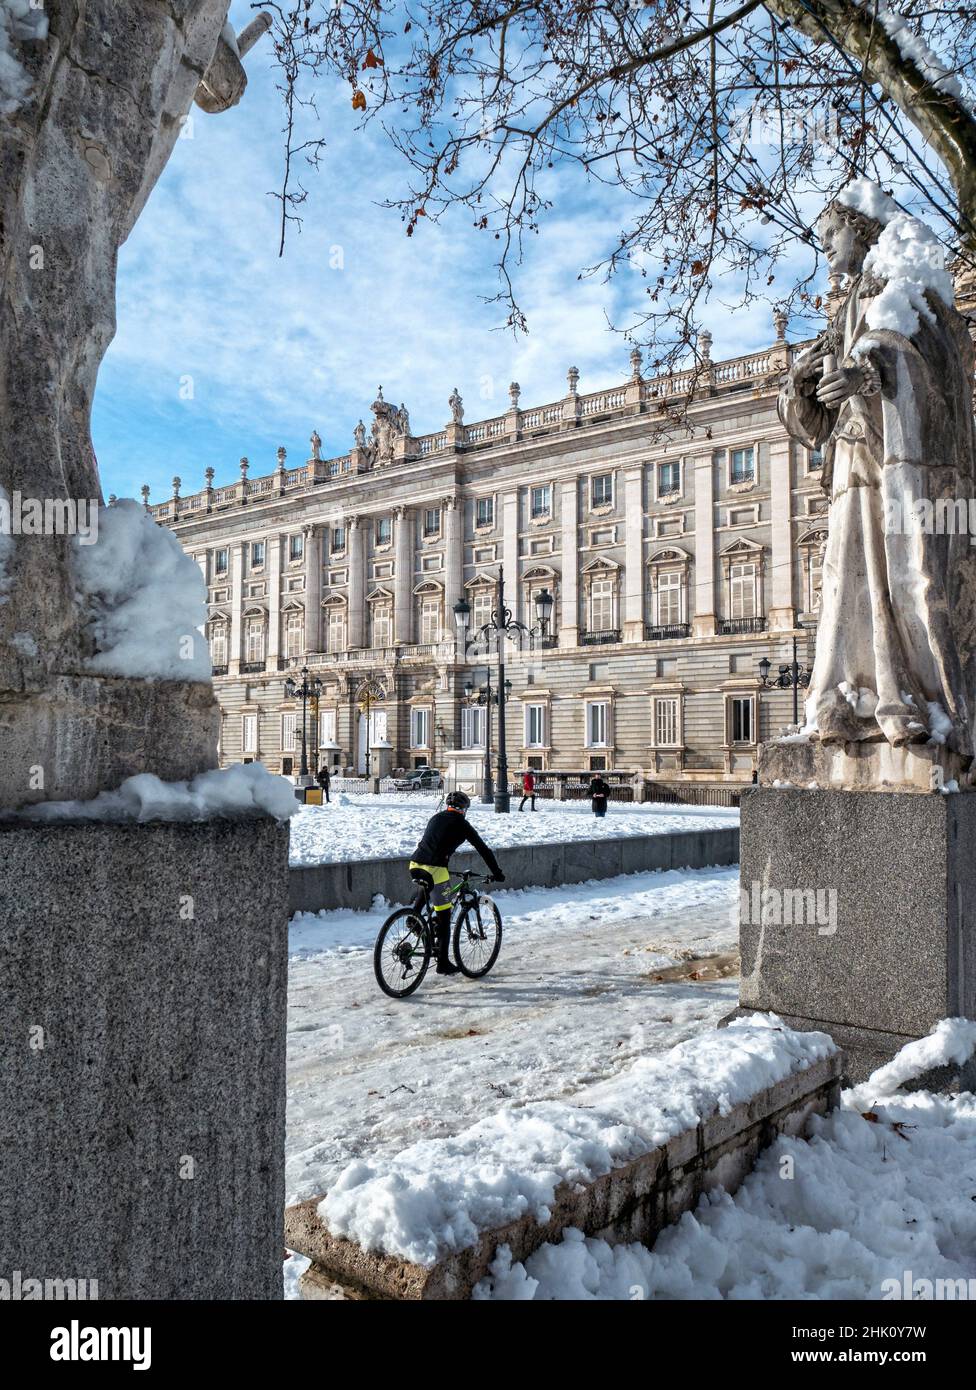 Palacio Real nevado. Madrid. España. Stock Photo